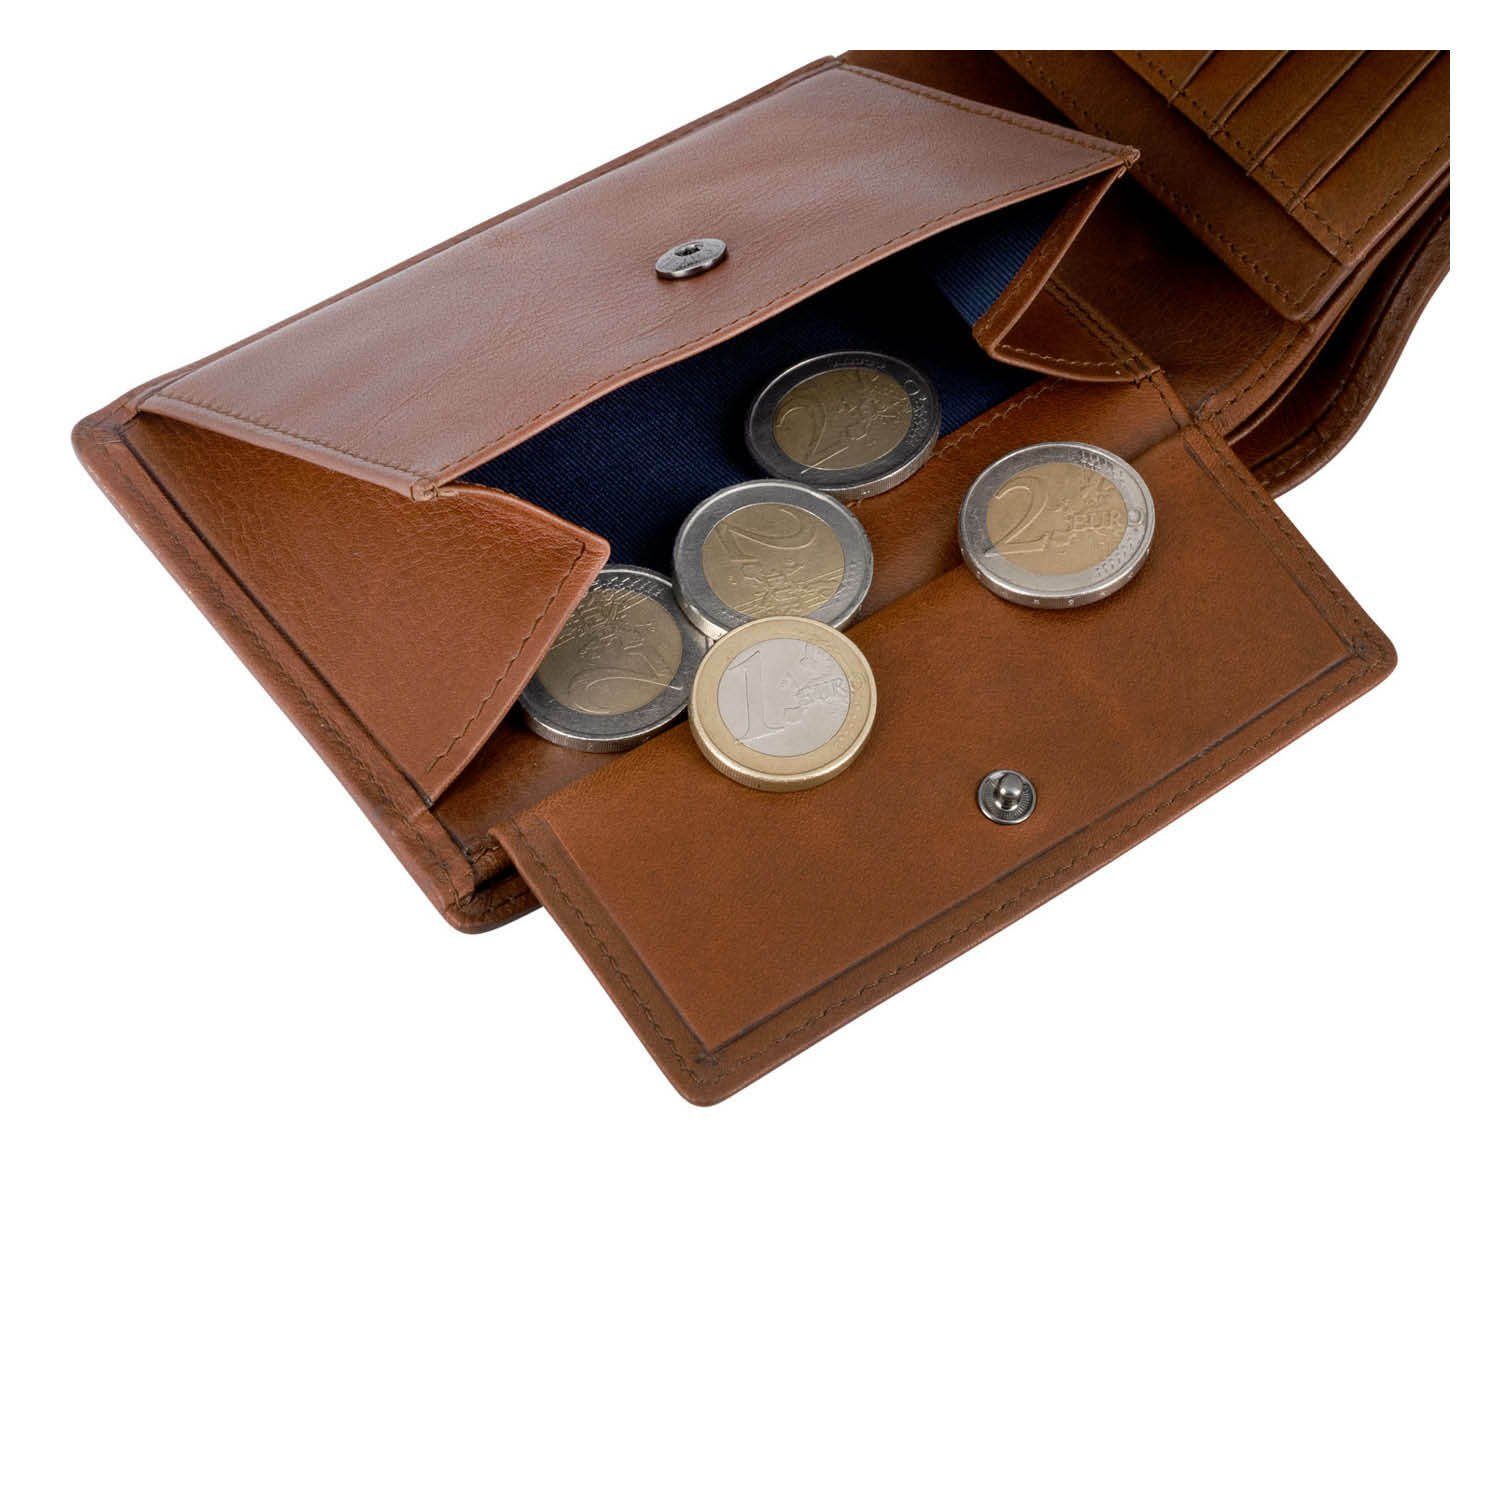 VON HEESEN Geldbörse Geldbeutel mit Cognac-Braun & Kartenfächer, 13 RFID-Schutz inkl. Geschenkbox Portemonnaie